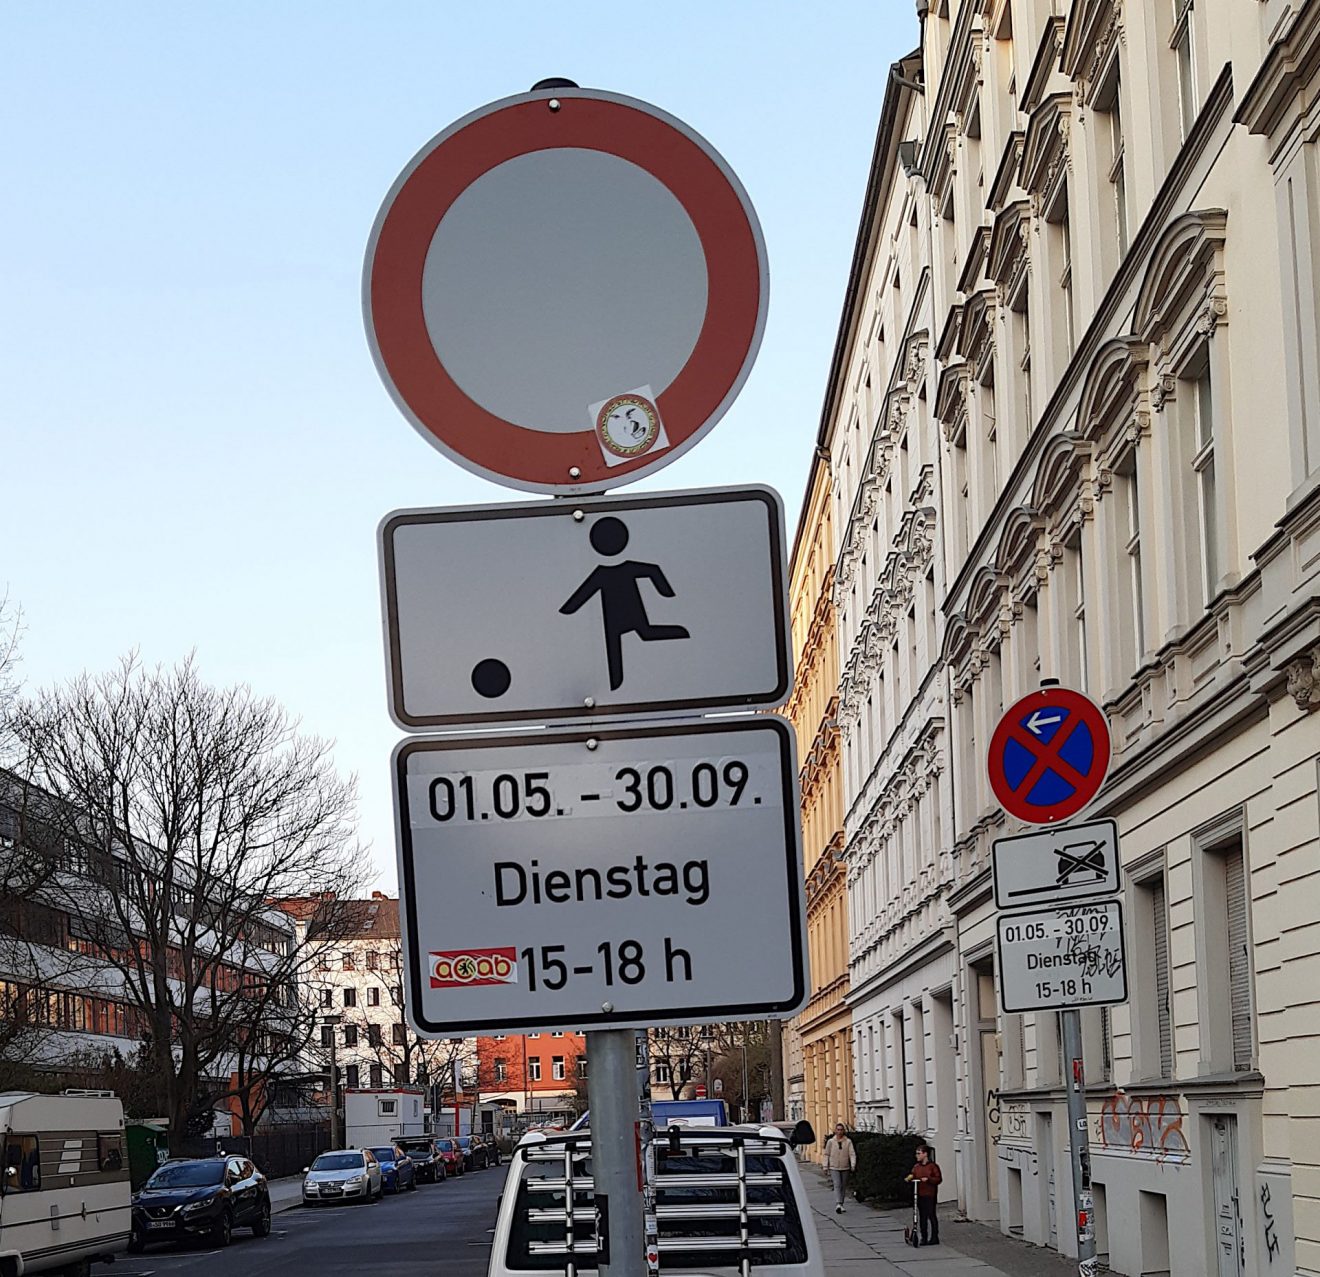 Verkehrsschild (Durchfahrt Verboten/Spielstraße) in der Templiner Straße mit den Zeiten für die Spielstraße, 1.5.-30.9., Dienstag, 15-18 Uhr.